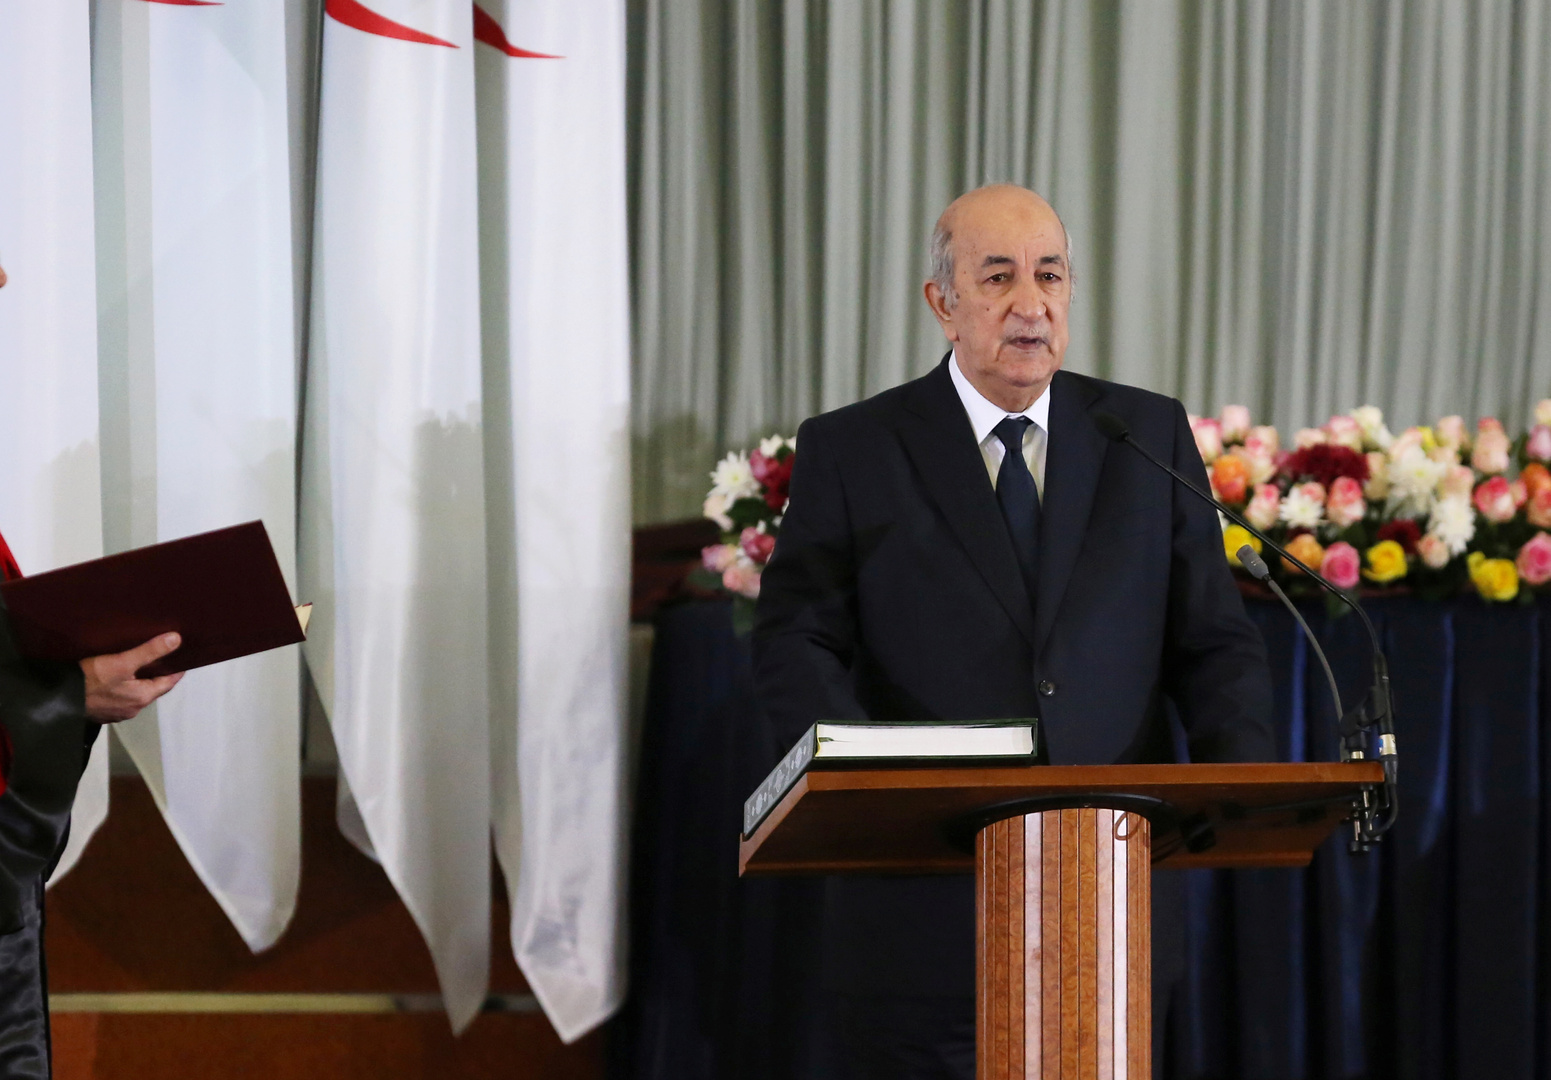 الرئيس الجزائري يبدأ مشاورات تشكيل حكومة جديدة